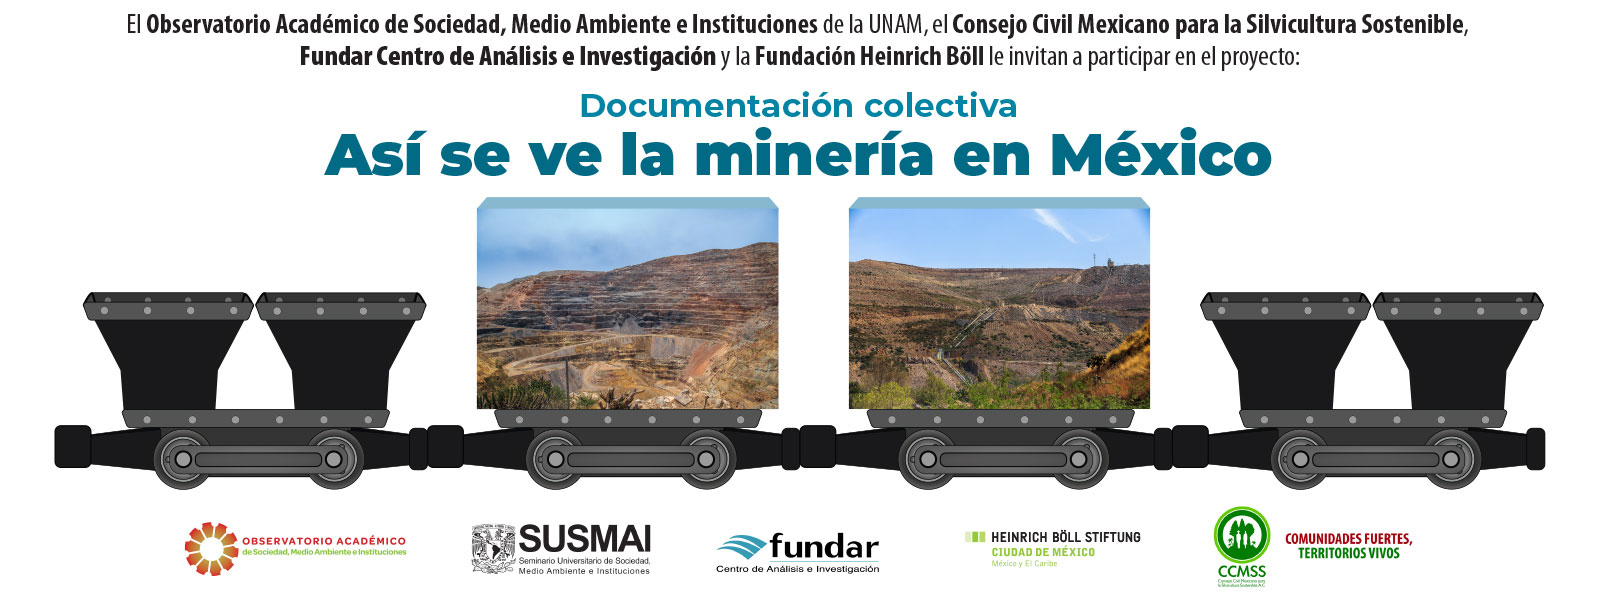 Convocatoria del concurso de fotografía “Así se ve la minería en México”